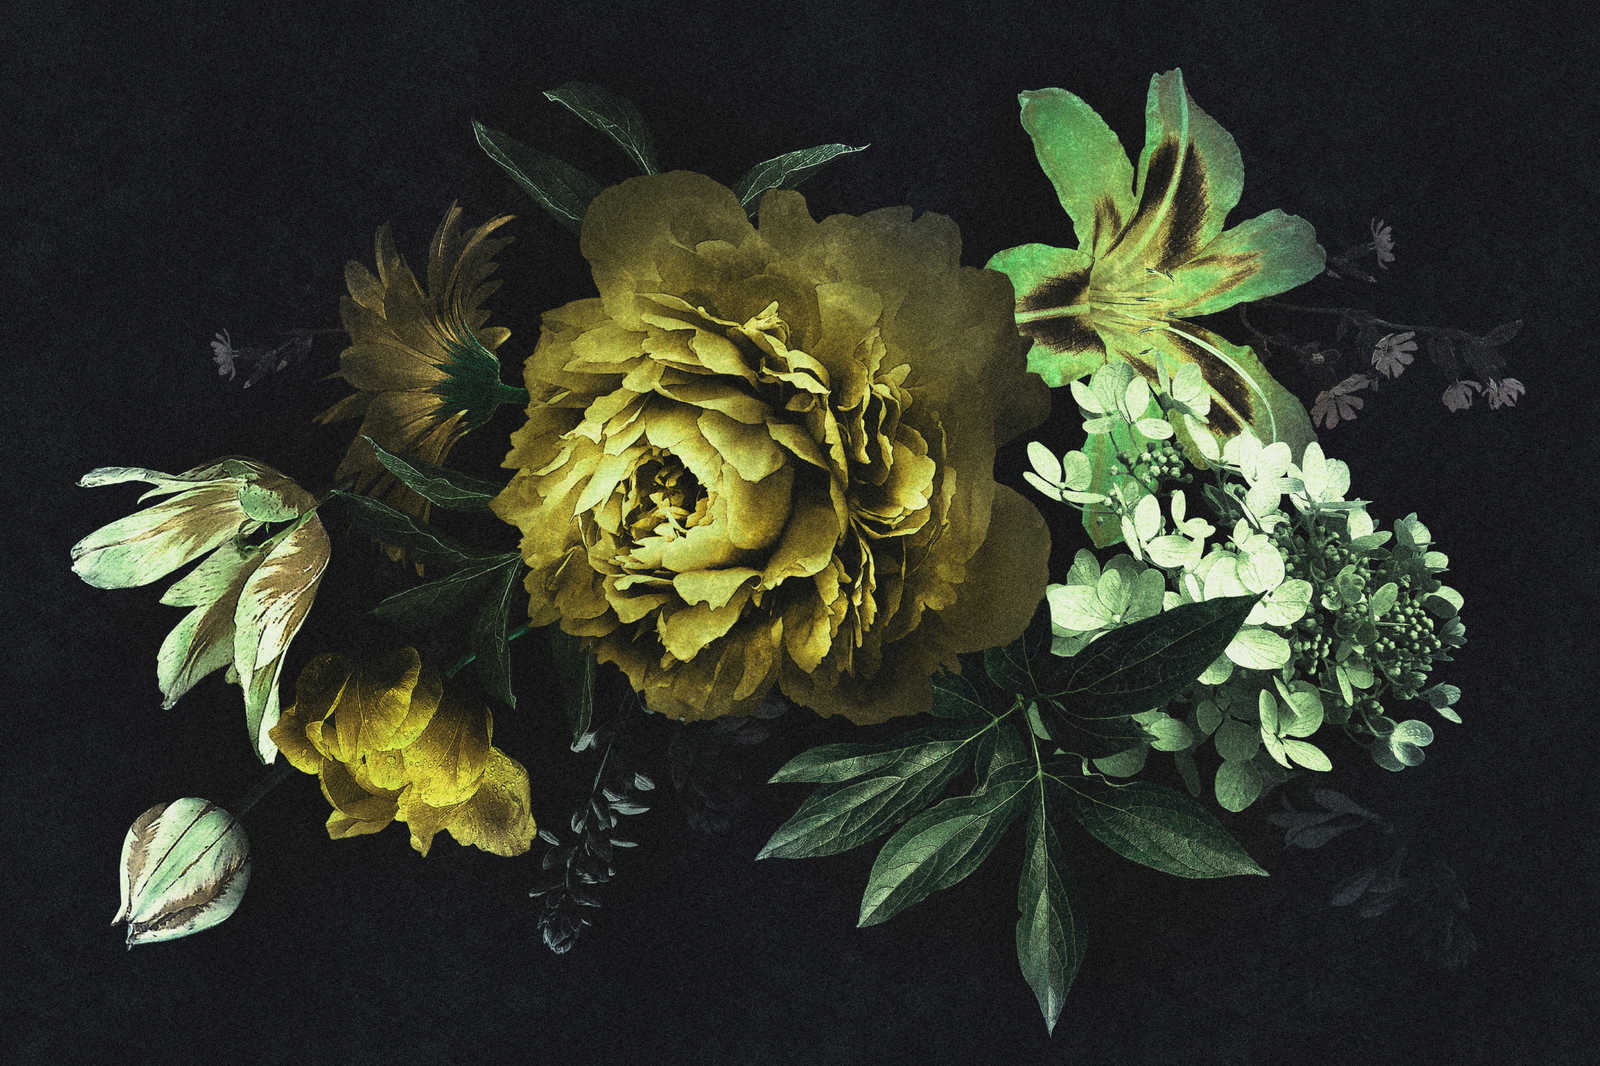             Drama queen 2 - Bouquet de fleurs Tableau sur toile en carton À structure en vert - 0,90 m x 0,60 m
        